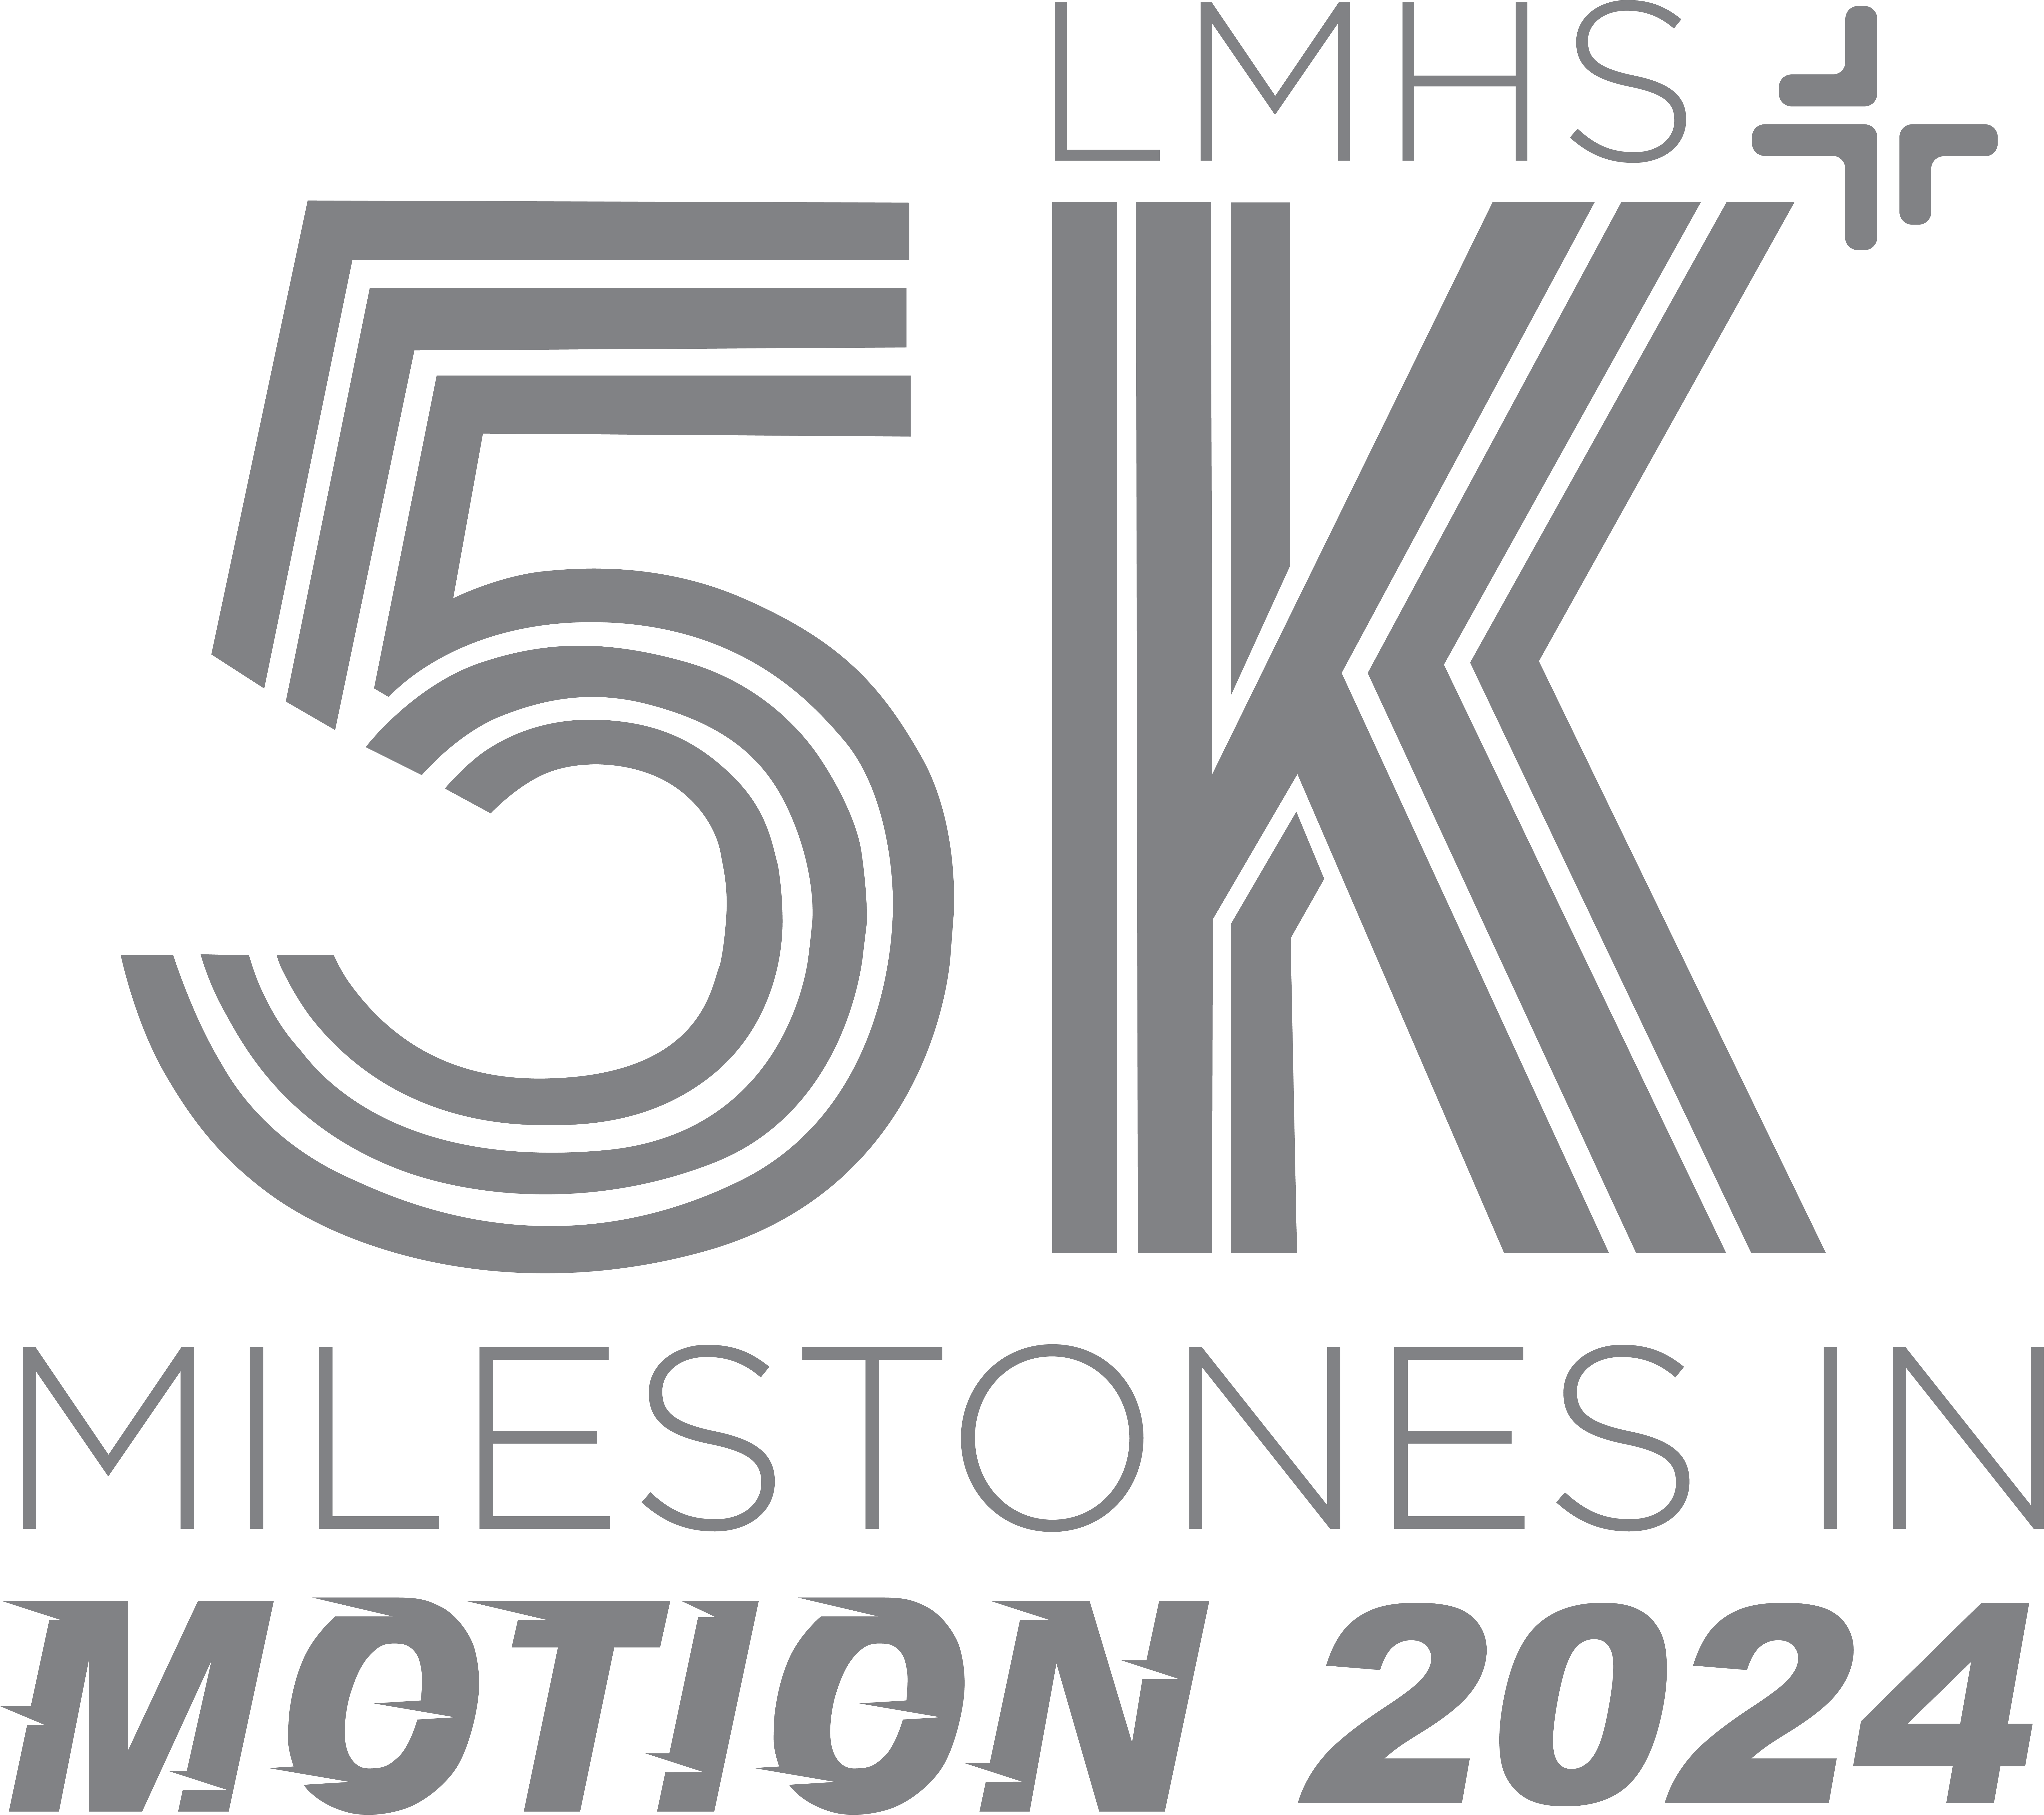 5K Milestones in Motion 2024 logo